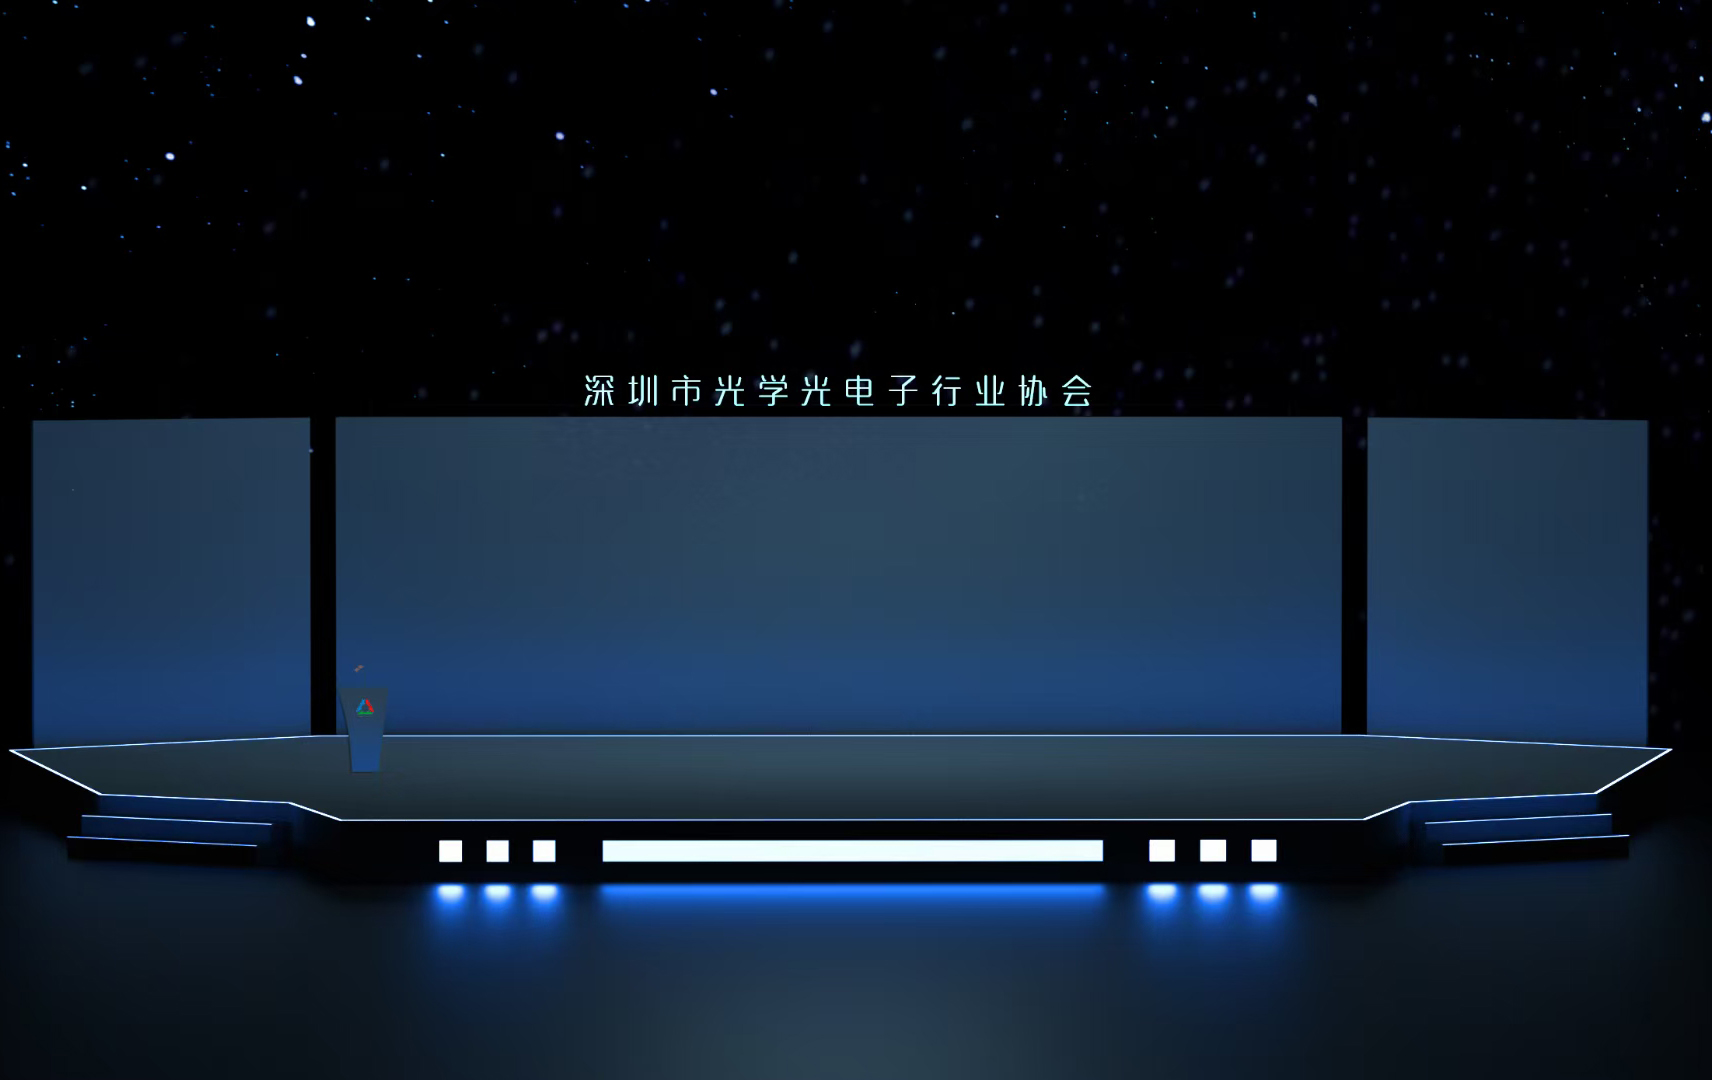 深圳市光学光电子行业协会舞台VI设计